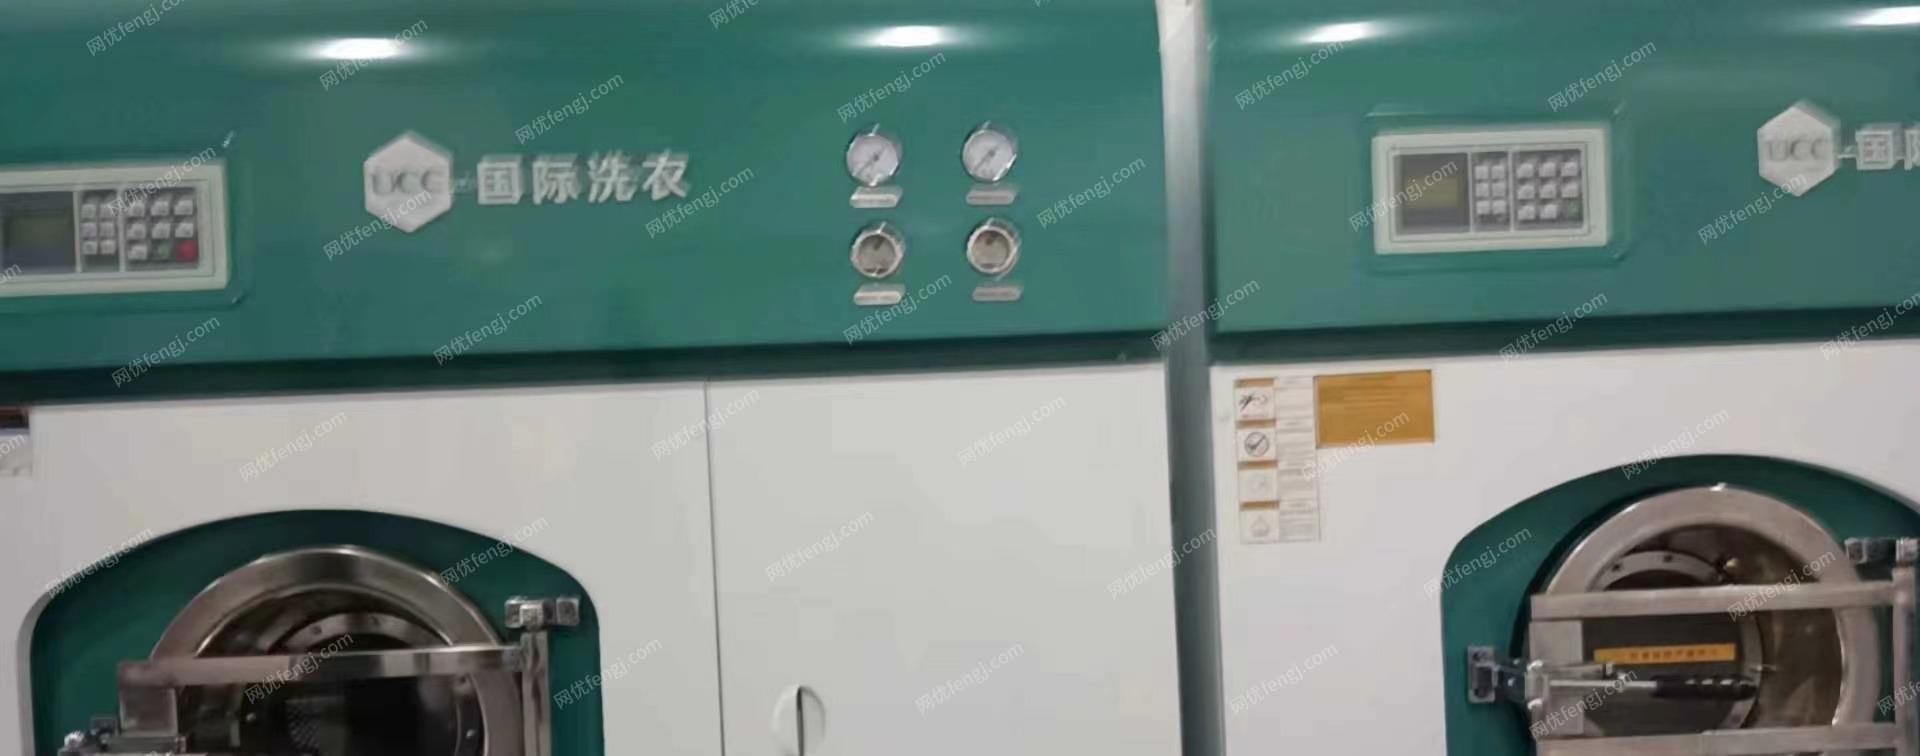 上海崇明干洗店全套设备转让